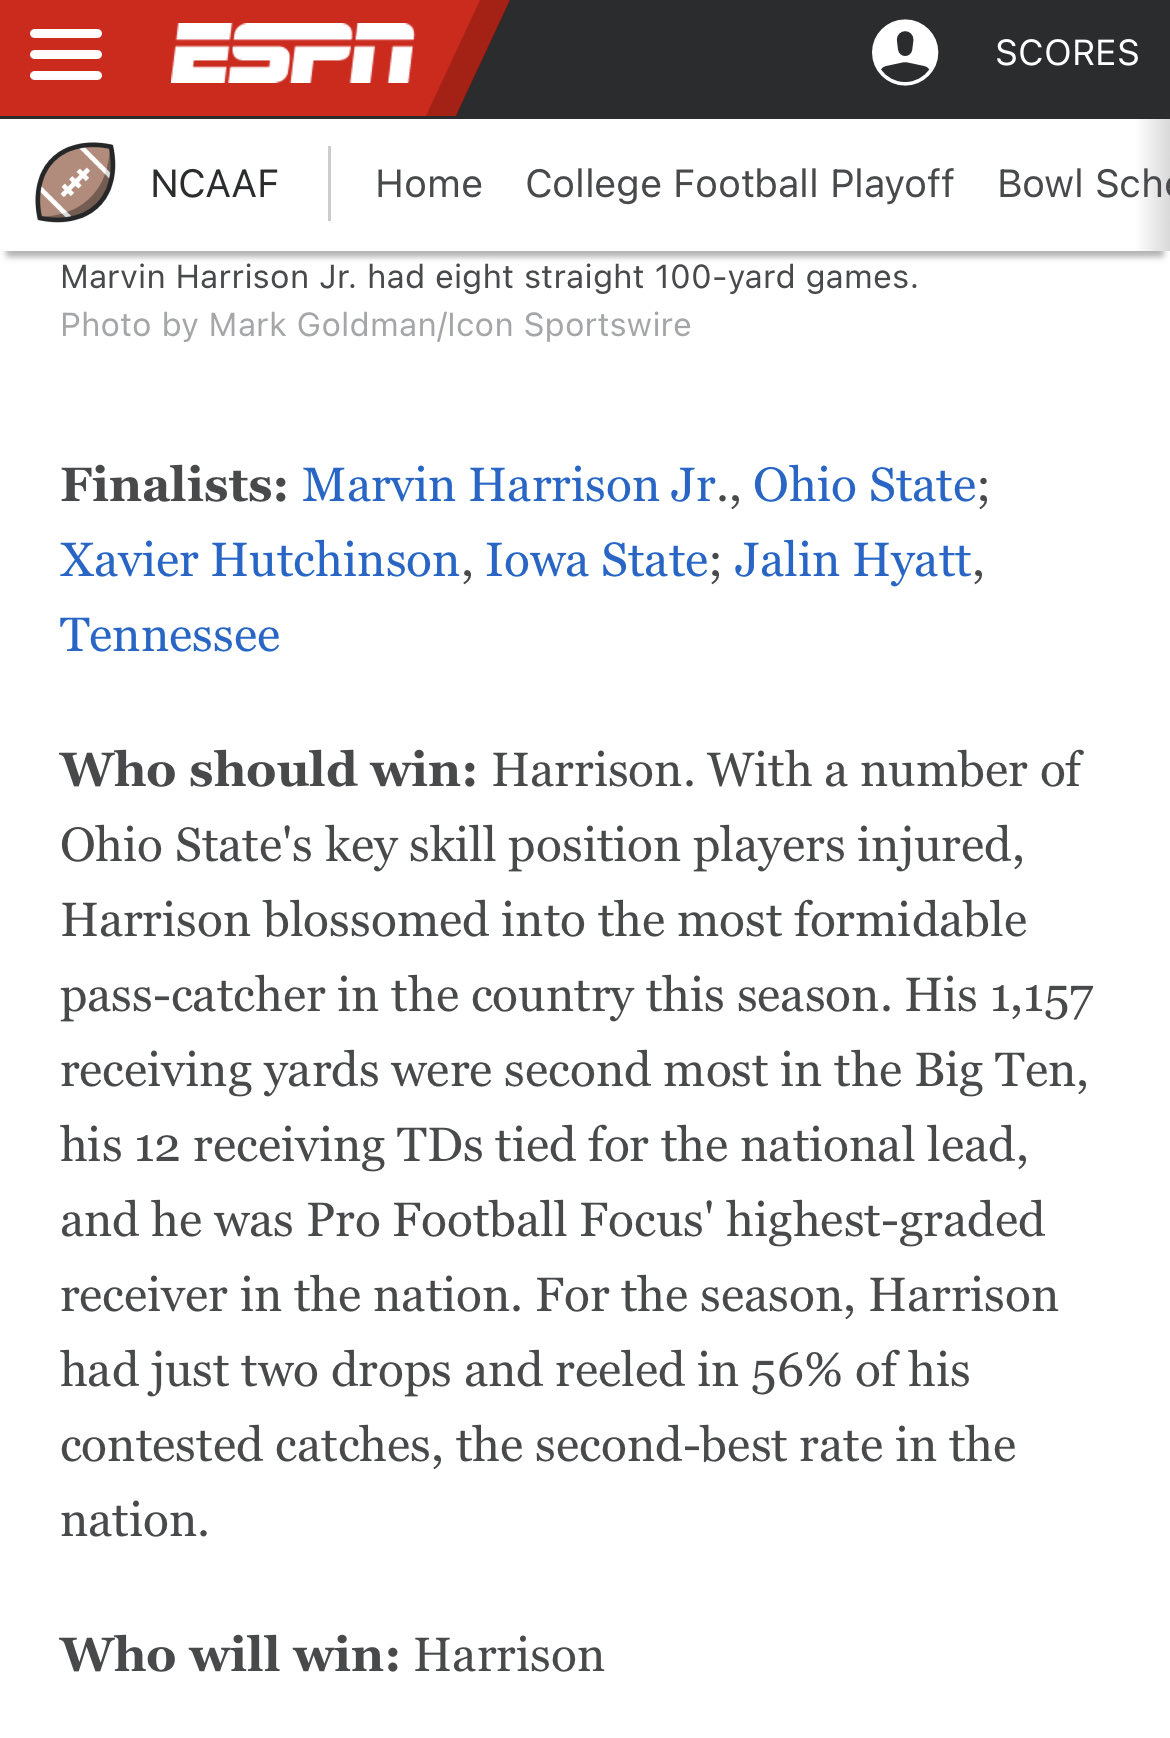 Marvin Harrison Jr. - Wikipedia